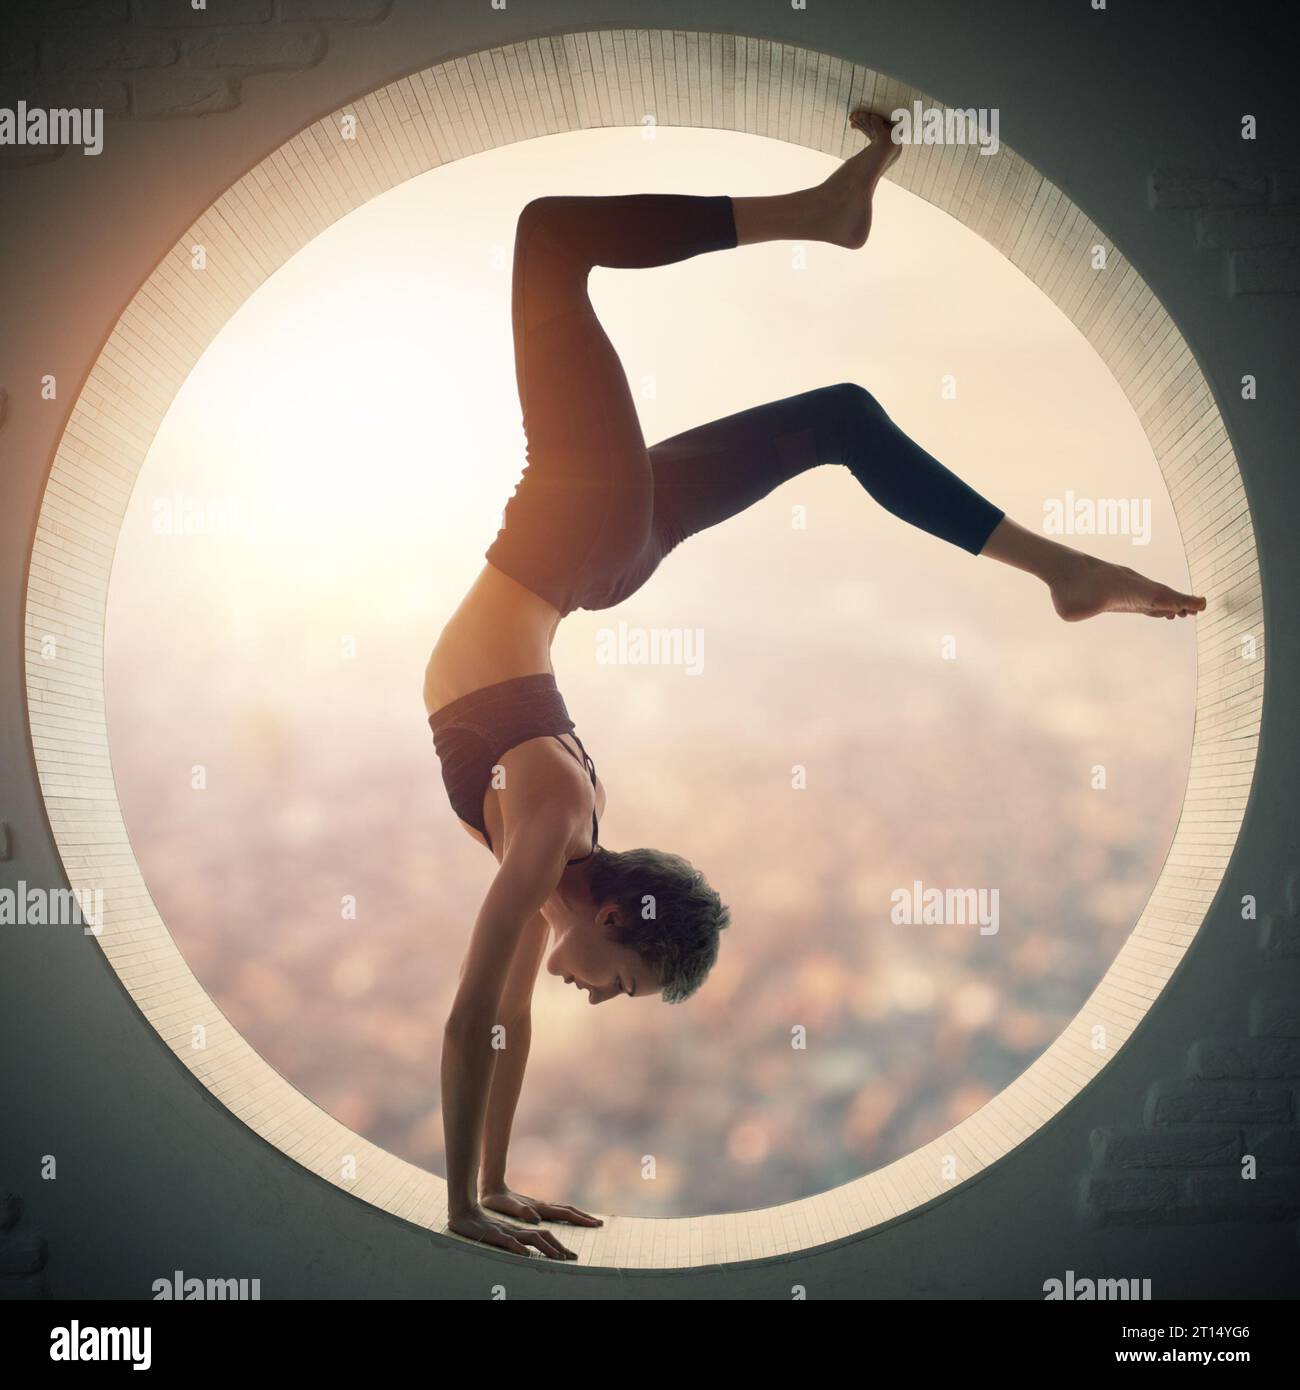 Belle coupe sportive yogi femme pratique yoga handstand asana Bhuja Vrischikasana - Scorpion handstand pose dans une fenêtre ronde avec vue arial de la Banque D'Images